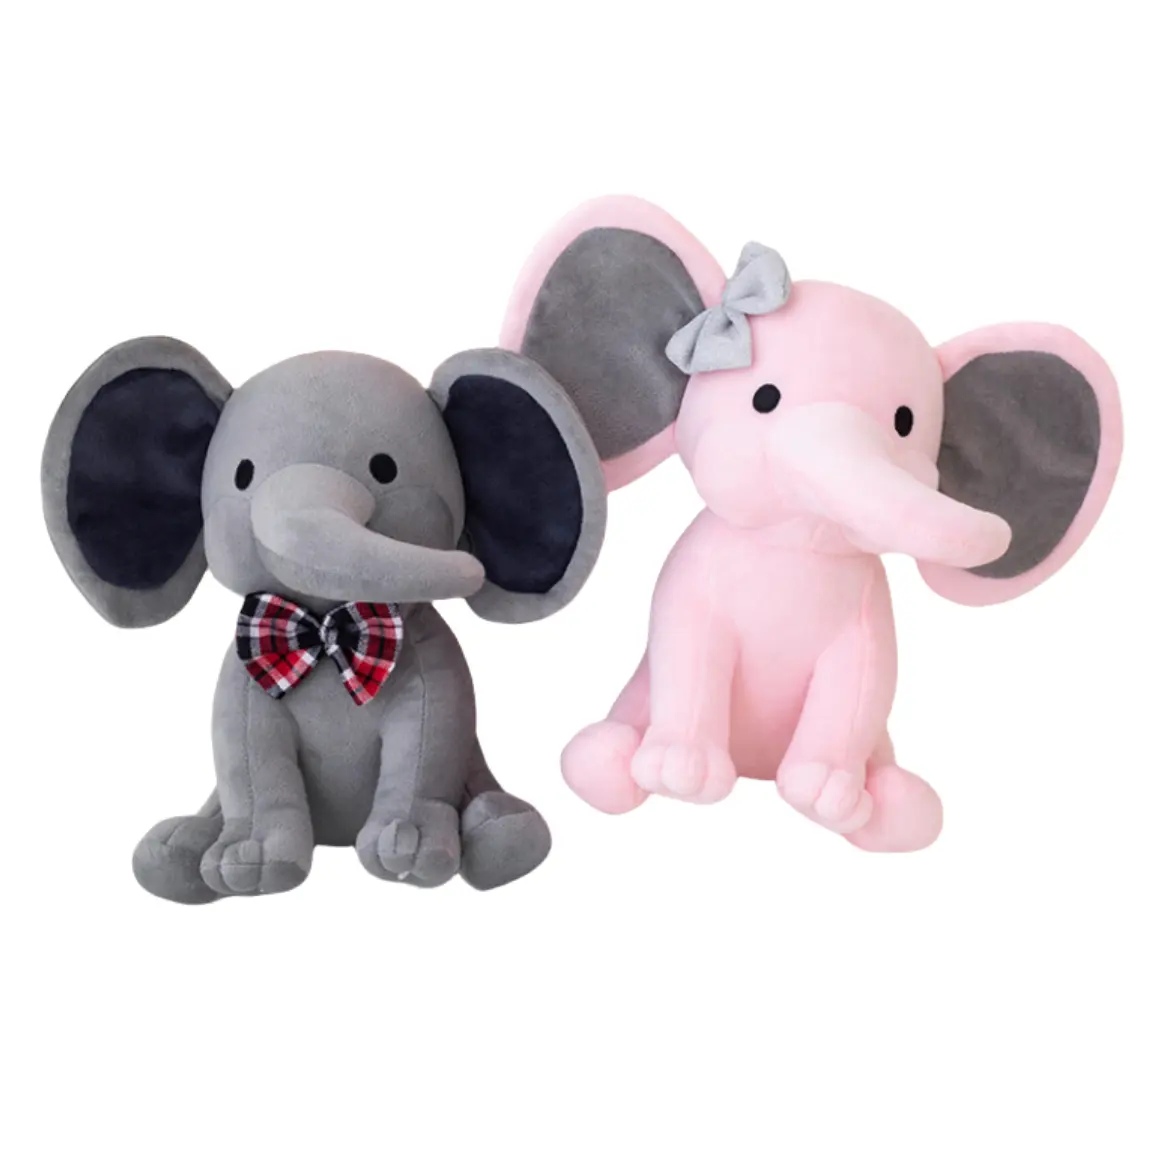 Individuelle plüsch-PP-Baumwoll-Baby-Spielzeuge mit großen Ohren bunte weiche gefüllte Elefantenspielzeuge mit großen Ohren Plüsch-Elefantenspielzeugpuppe